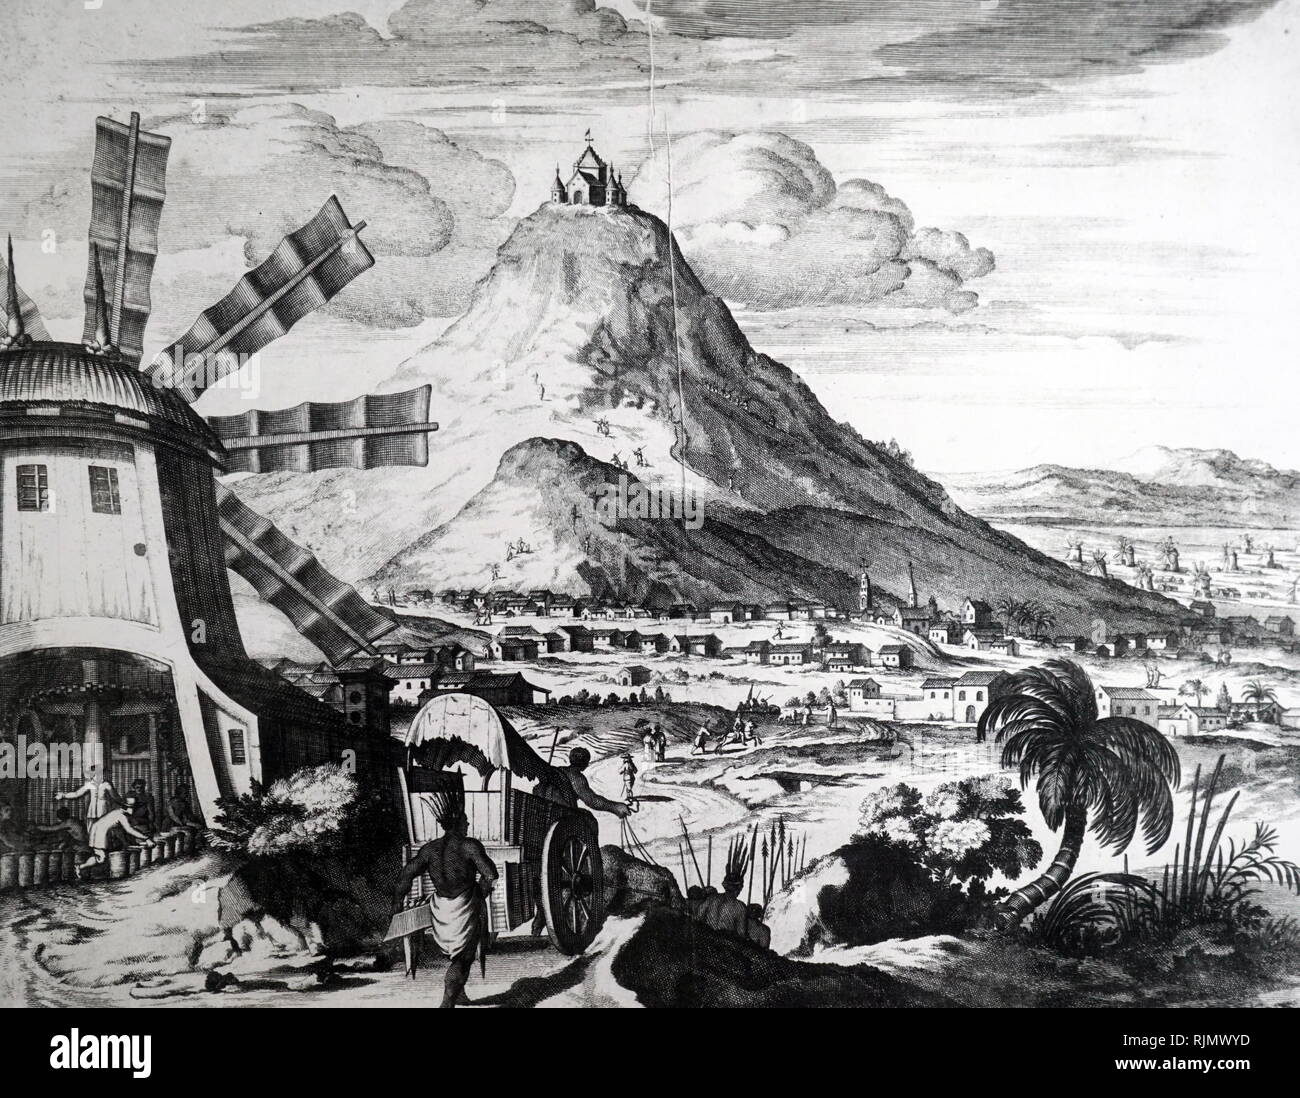 Mount Potosi (Bolivien); berühmt nach reichen Vorkommen an Silber in Es wurden im Jahr 1545 entdeckt. Auf der linken Seite des Bildes ist ein Windkraftanlagen stanzen Mühle, die für das Behandeln der Erz. Aus dem 17. Jahrhundert Kupferstich Stockfoto